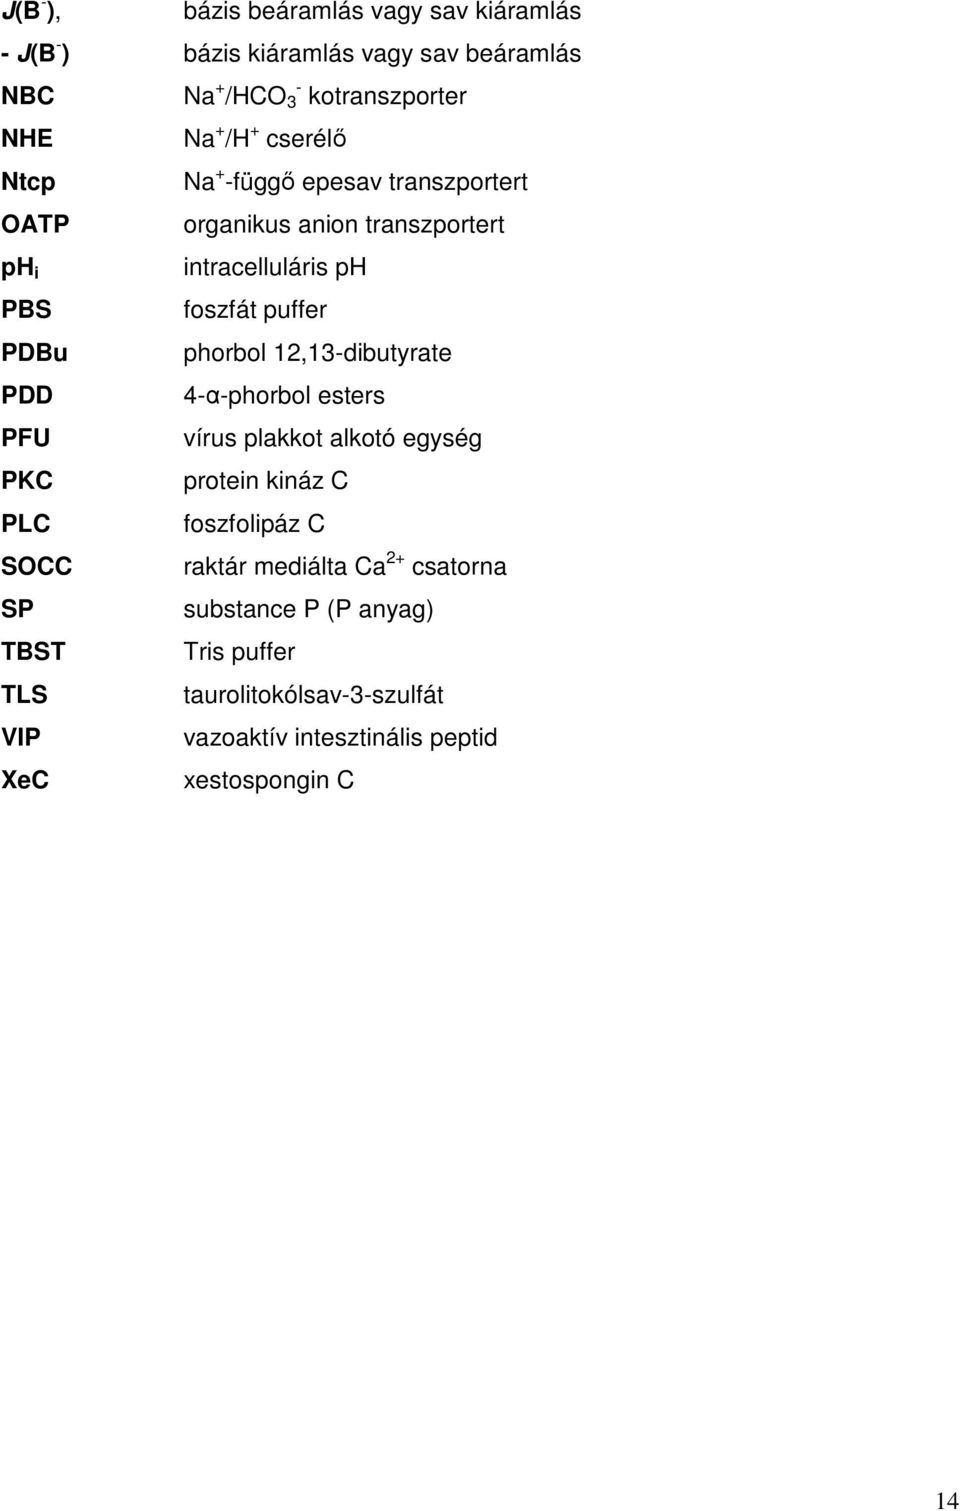 phorbol 12,13dibutyrate PDD 4αphorbol esters PFU vírus plakkot alkotó egység PKC protein kináz C PLC foszfolipáz C SOCC raktár